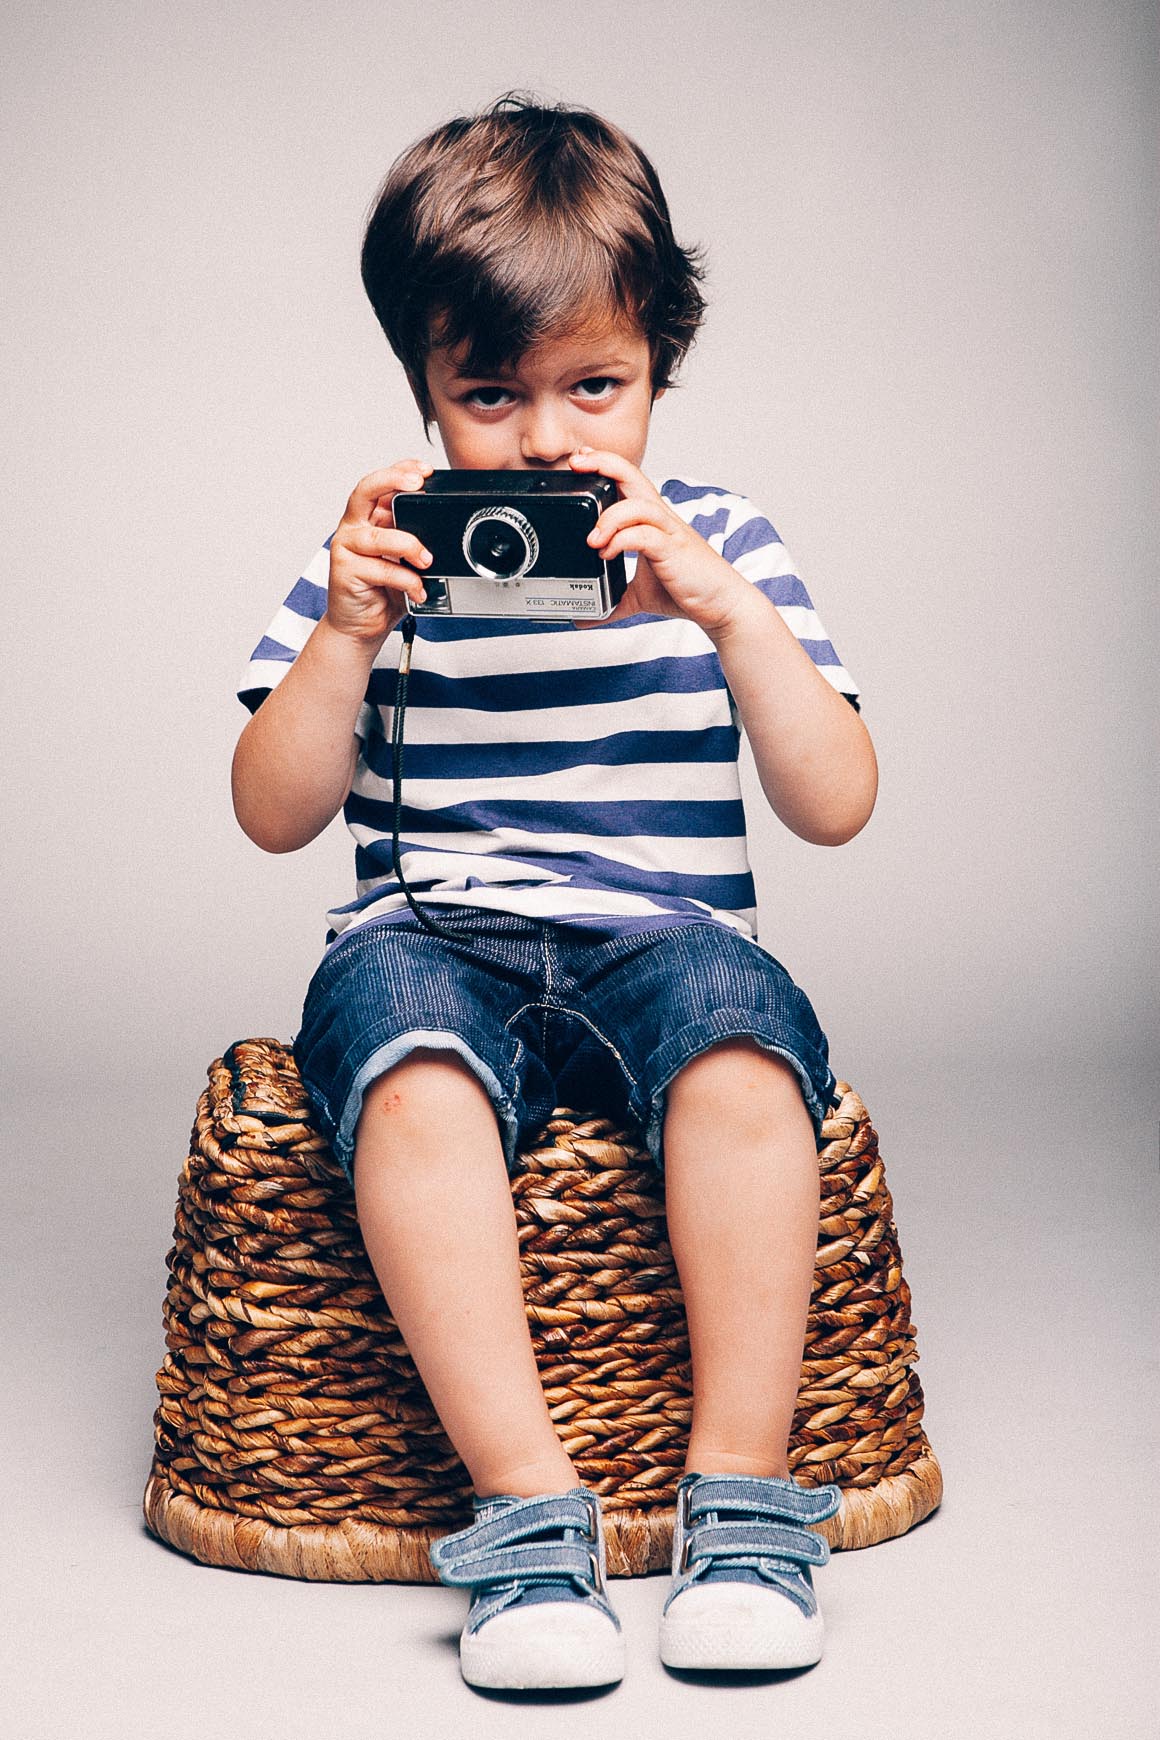 niño sentado con cámara de fotos mirando a fotógrafo